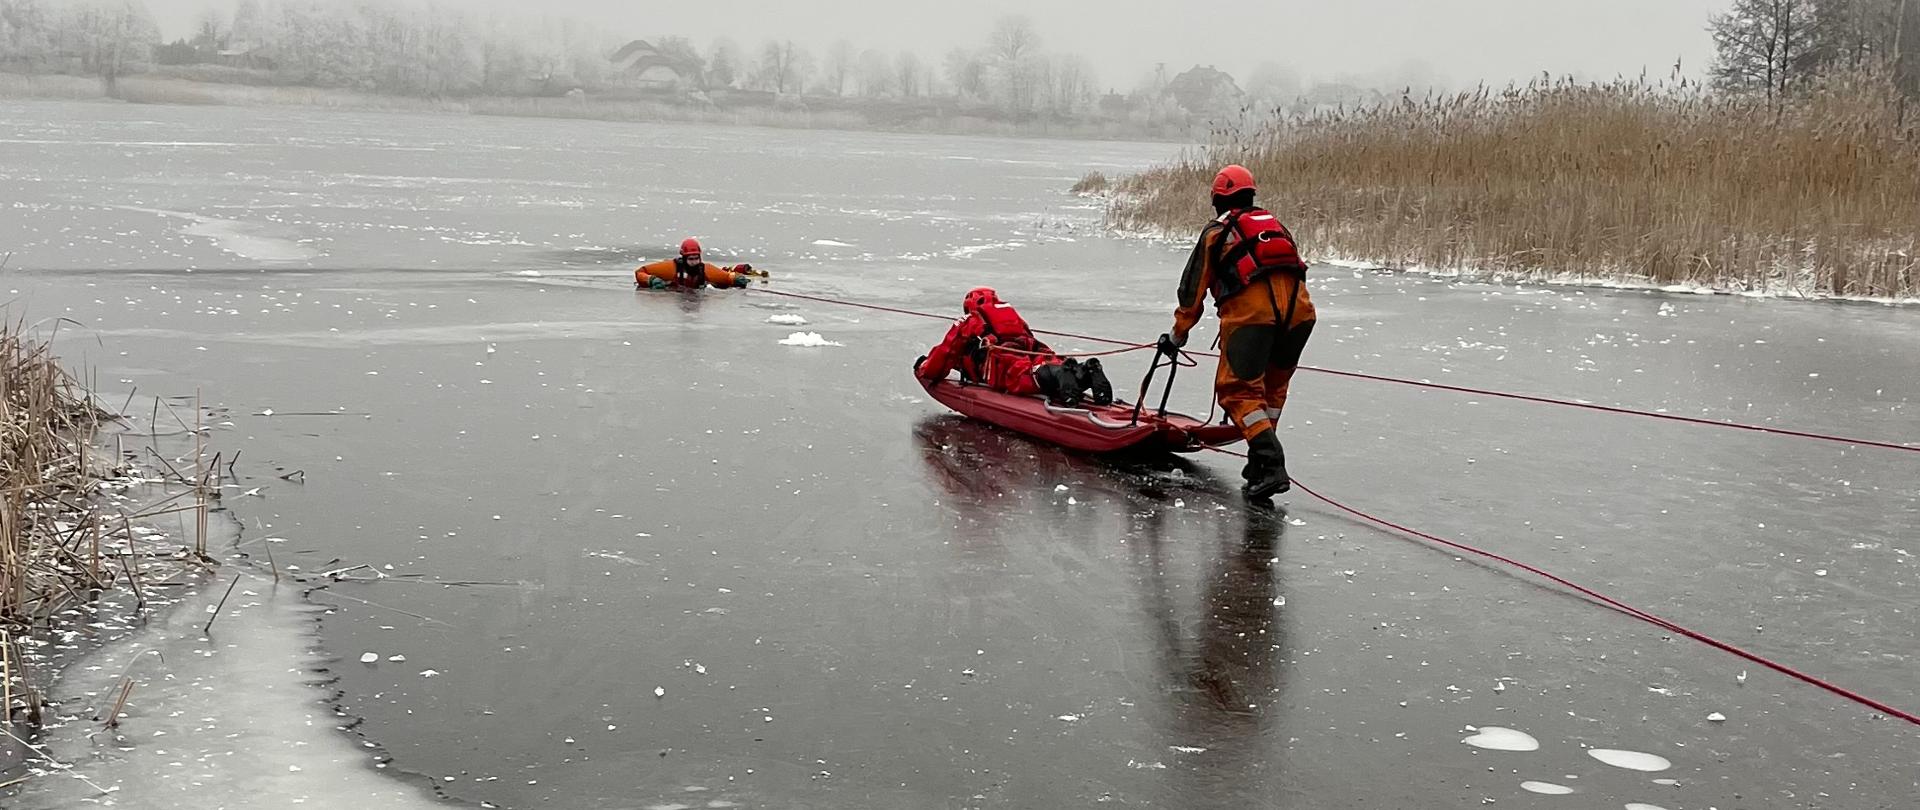 Zdjęcie przedstawia strażaków ćwiczących na lodzie. Strażacy zabezpieczeni w ubrania do pracy w wodzie. Jeden ze strażaków topi się w przeręblu. Dwóch strażaków zabezpieczonych liną, w tym jeden leży na desce lodowej podchodzą do poszkodowanego.